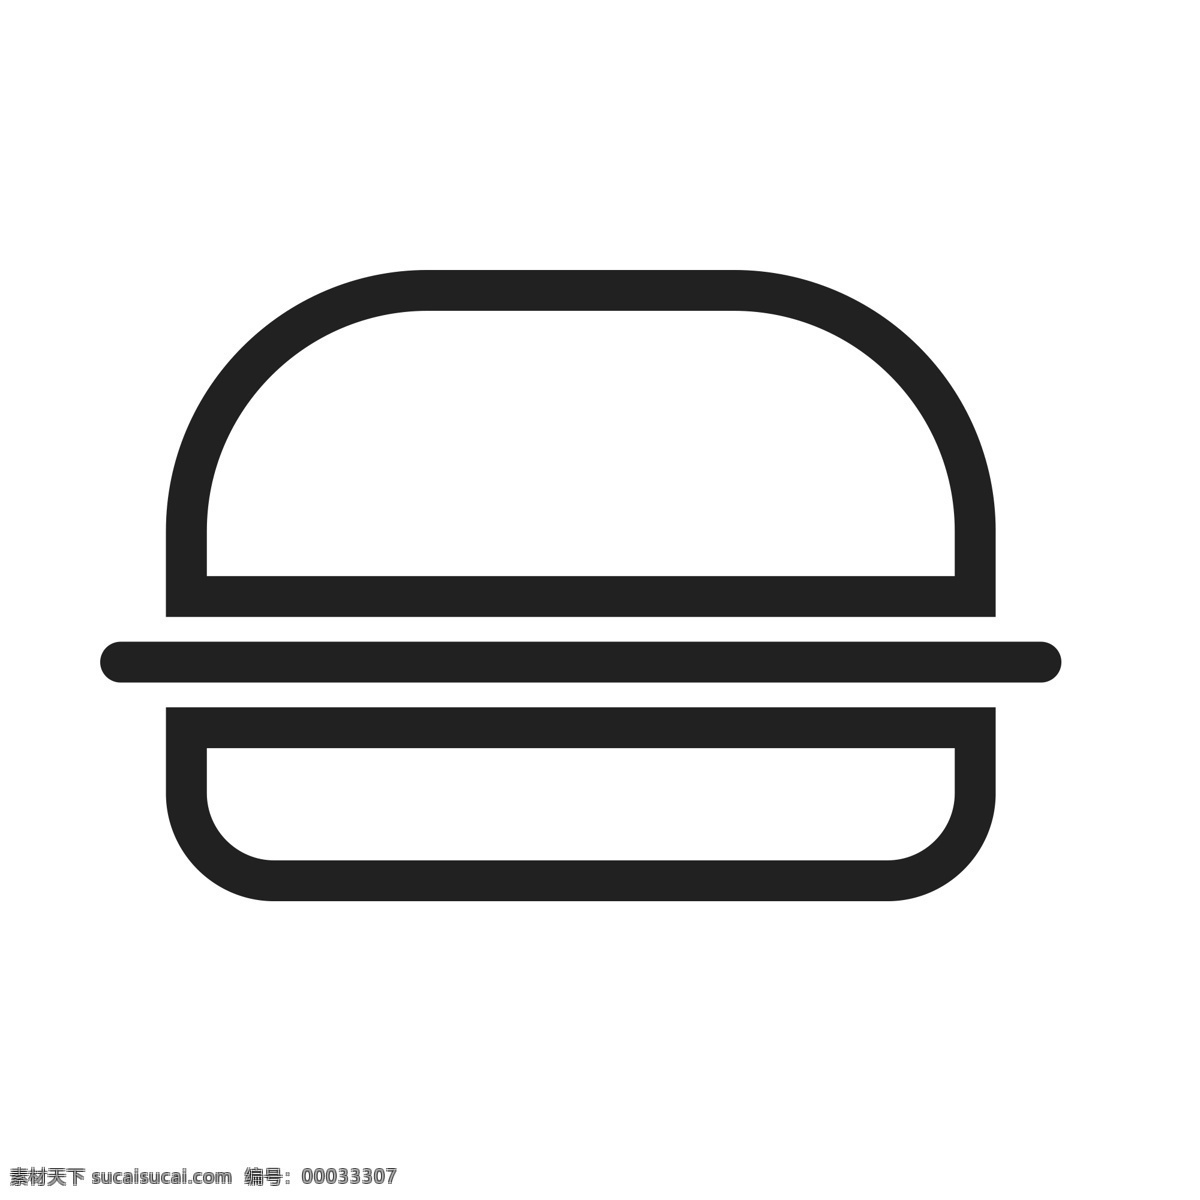 扁平化汉堡 西餐 快餐 扁平化ui ui图标 手机图标 界面ui 网页ui h5图标